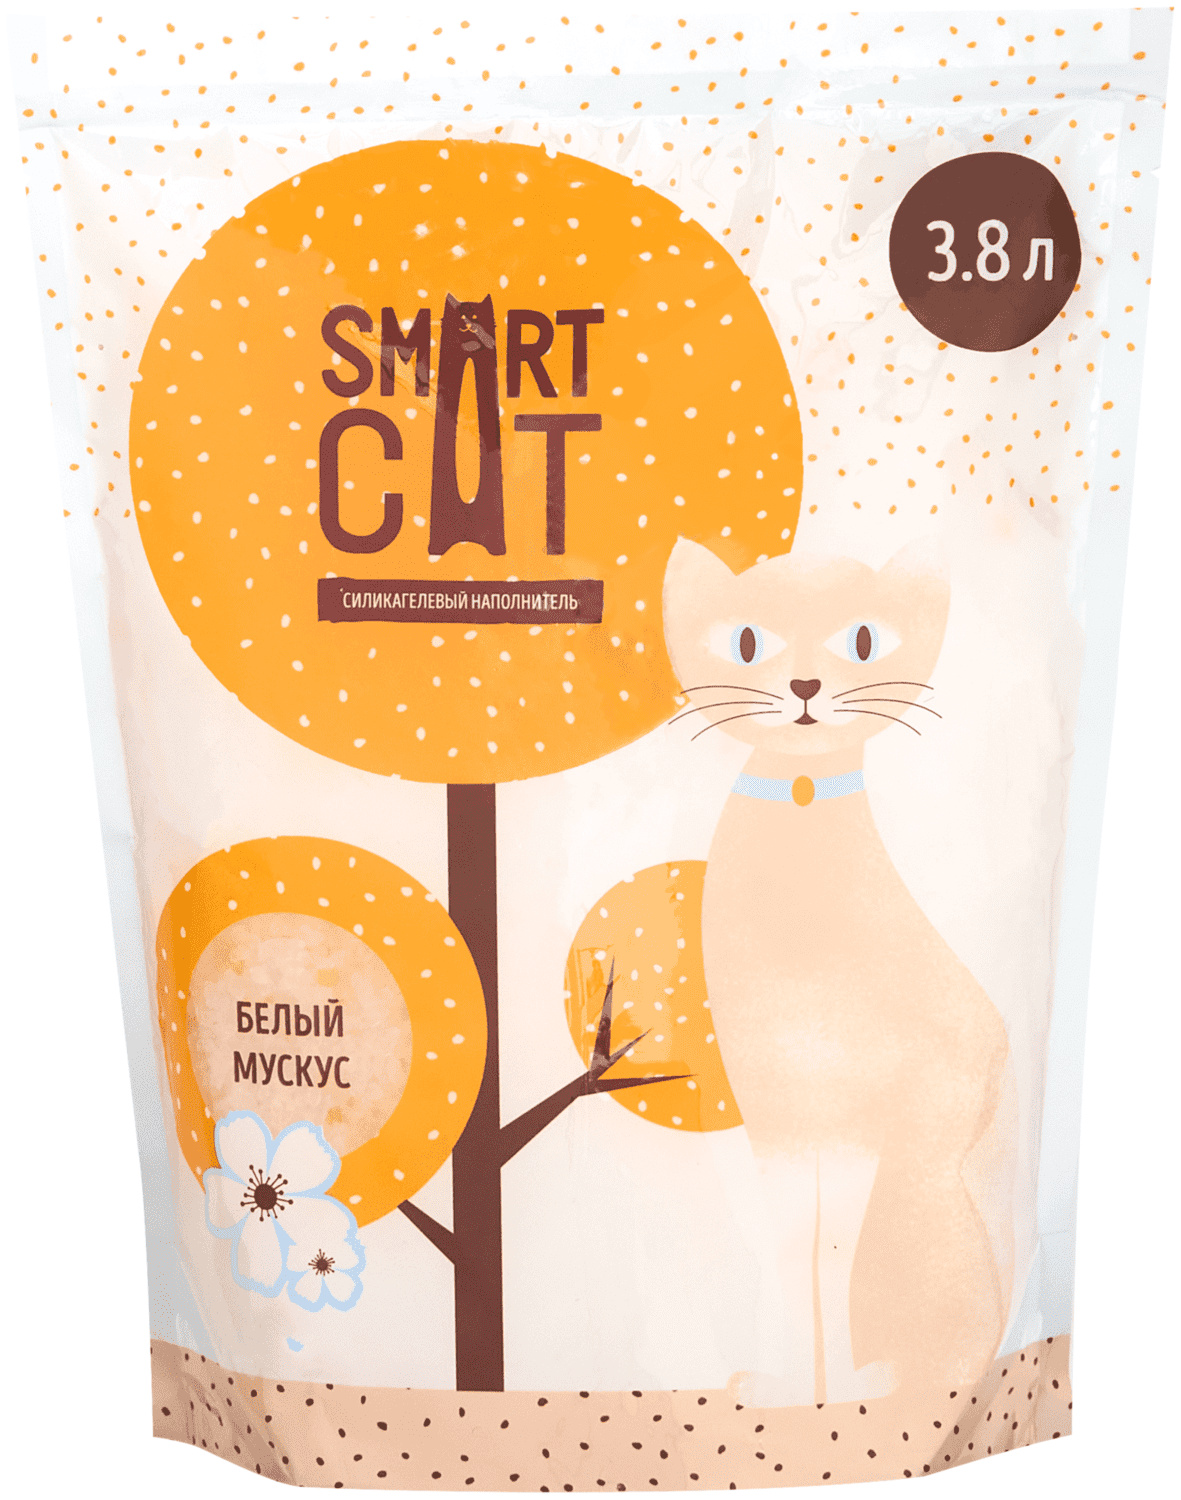 Силикагелевый наполнитель с ароматом "белый мускус" (3,32 кг) Smart Cat наполнитель Силикагелевый наполнитель с ароматом "белый мускус" (3,32 кг) - фото 3